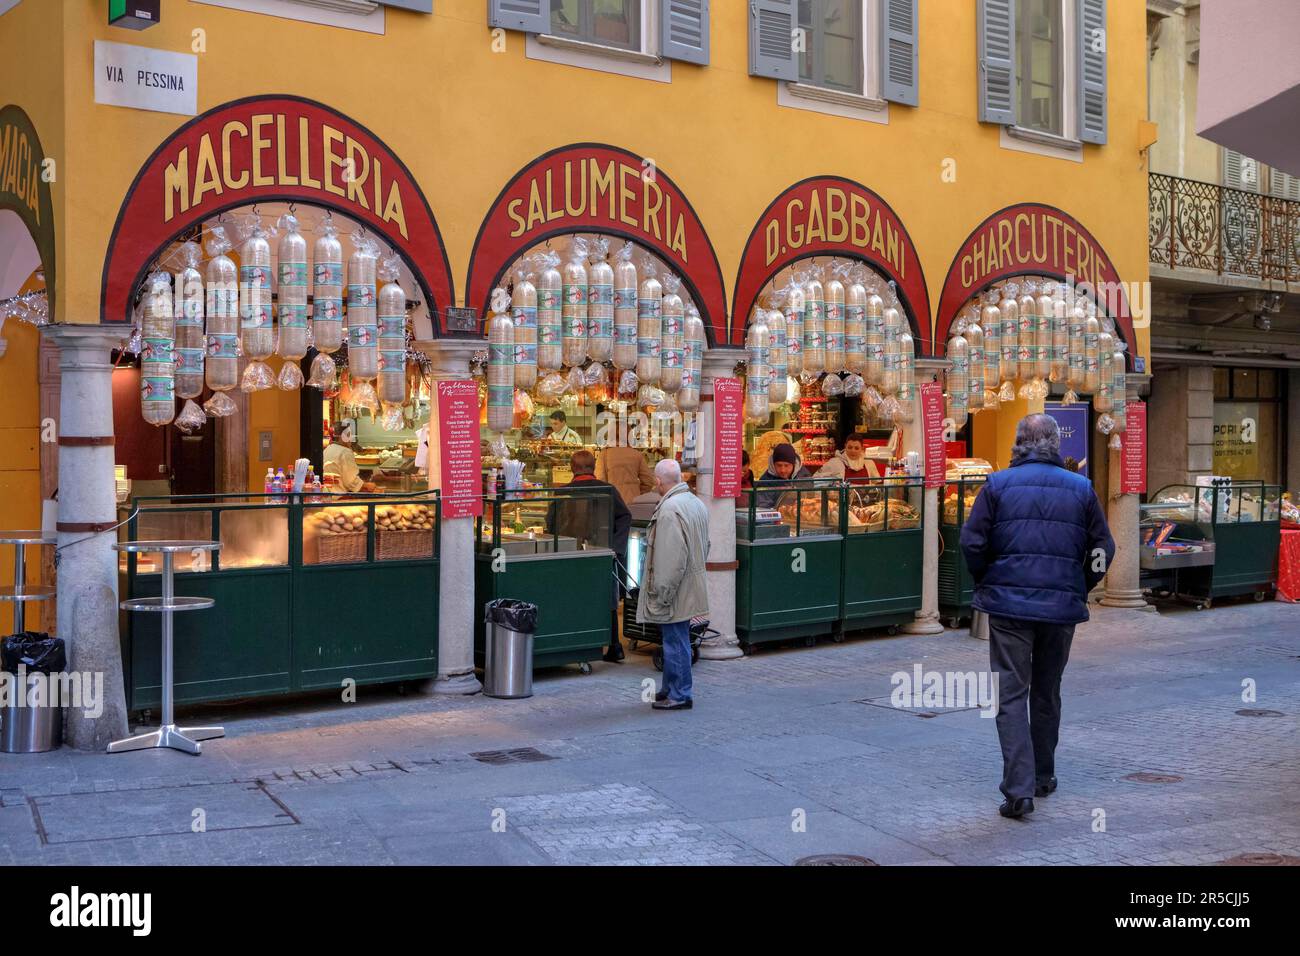 Butcher's Gabbani, Via Pessina, Lugano, Ticino, SUIZA Foto de stock